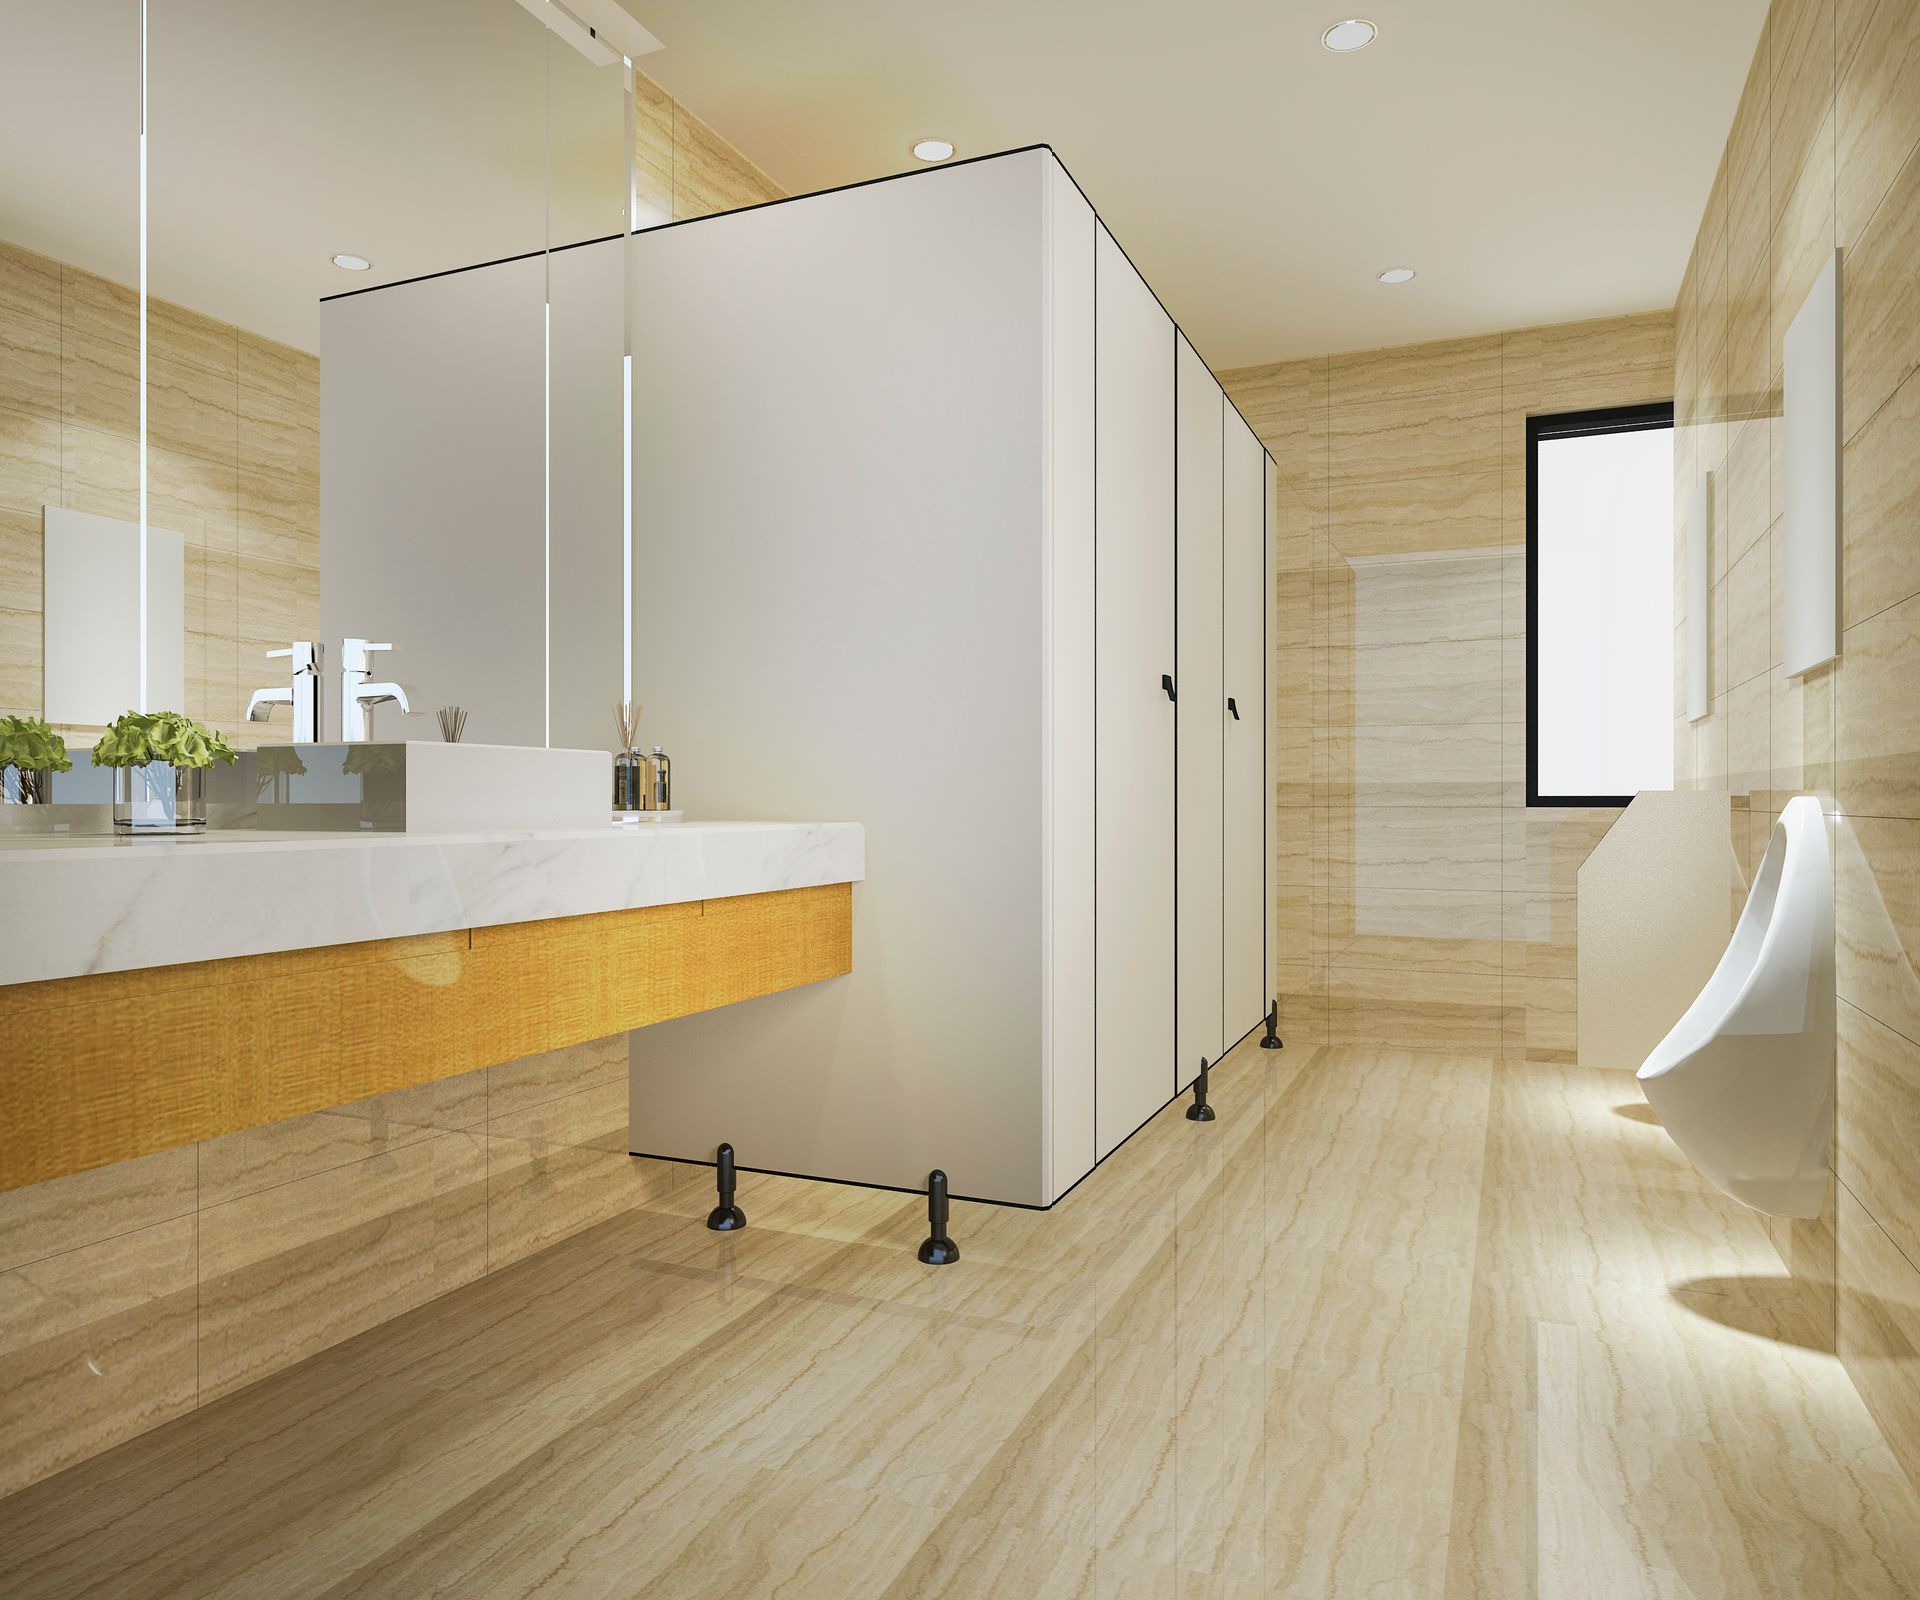 Un baño con lavabo, urinarios, espejos y ventana.